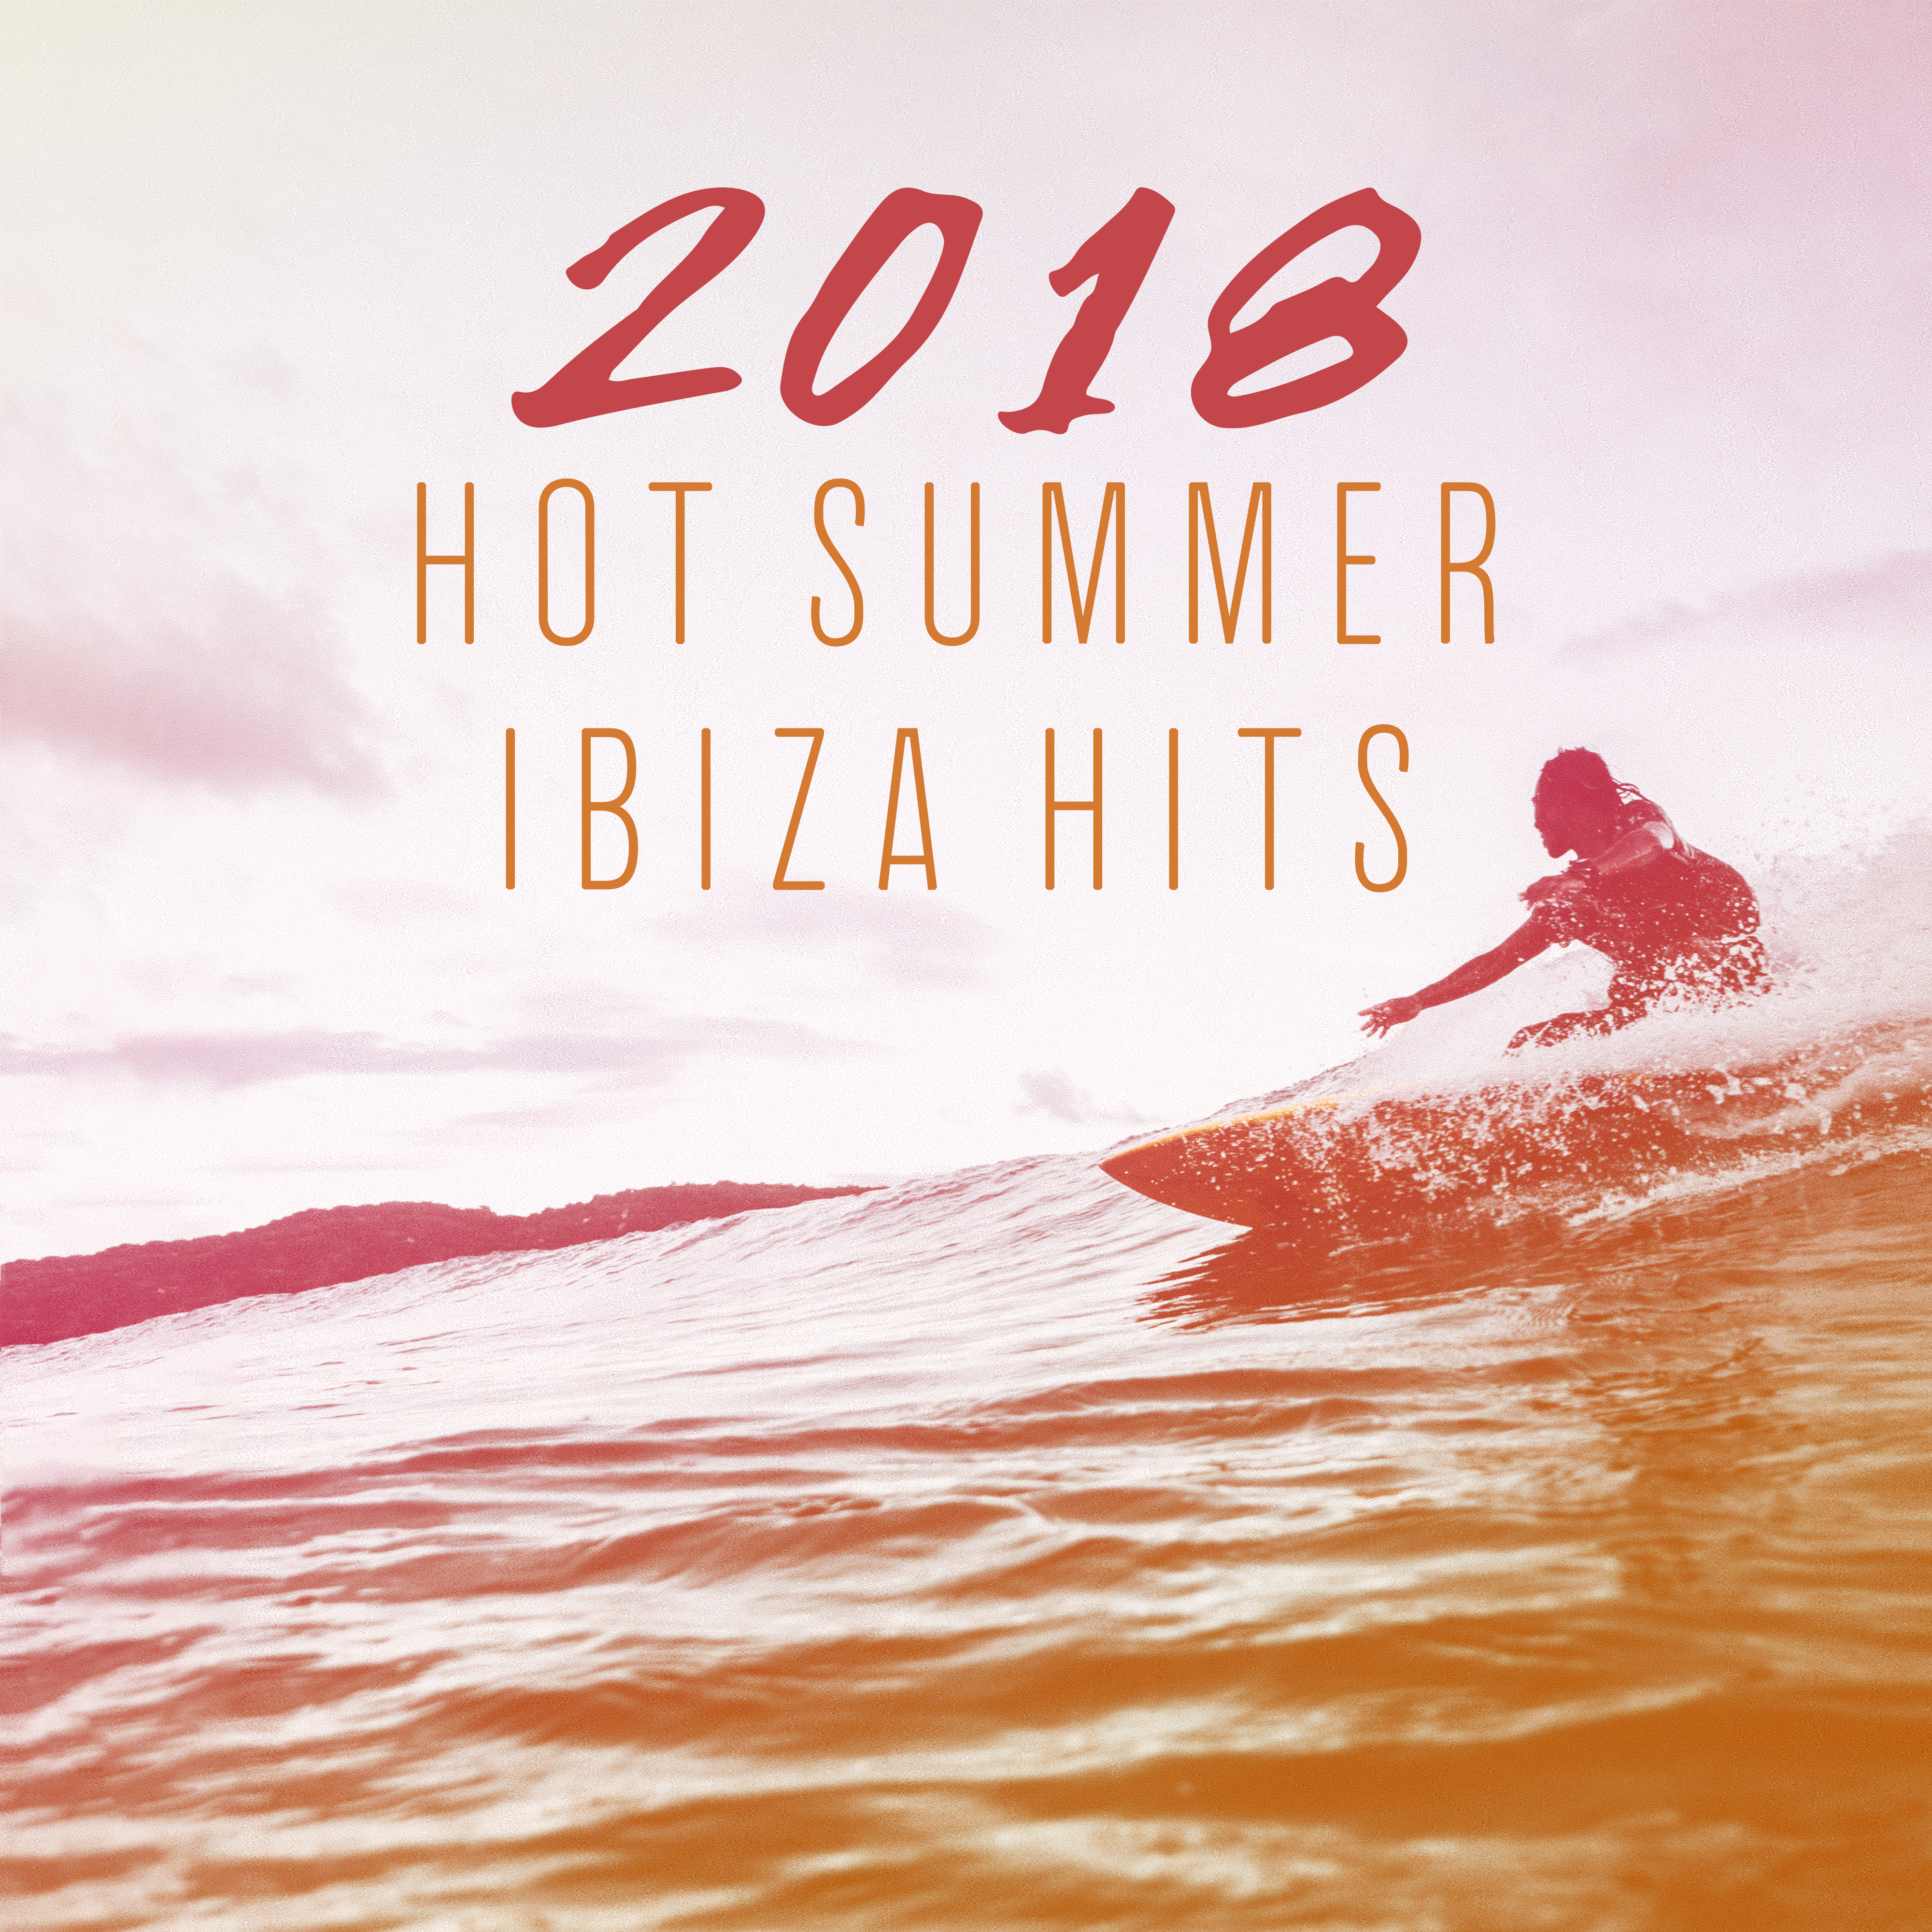 2018 Hot Summer Ibiza Hits